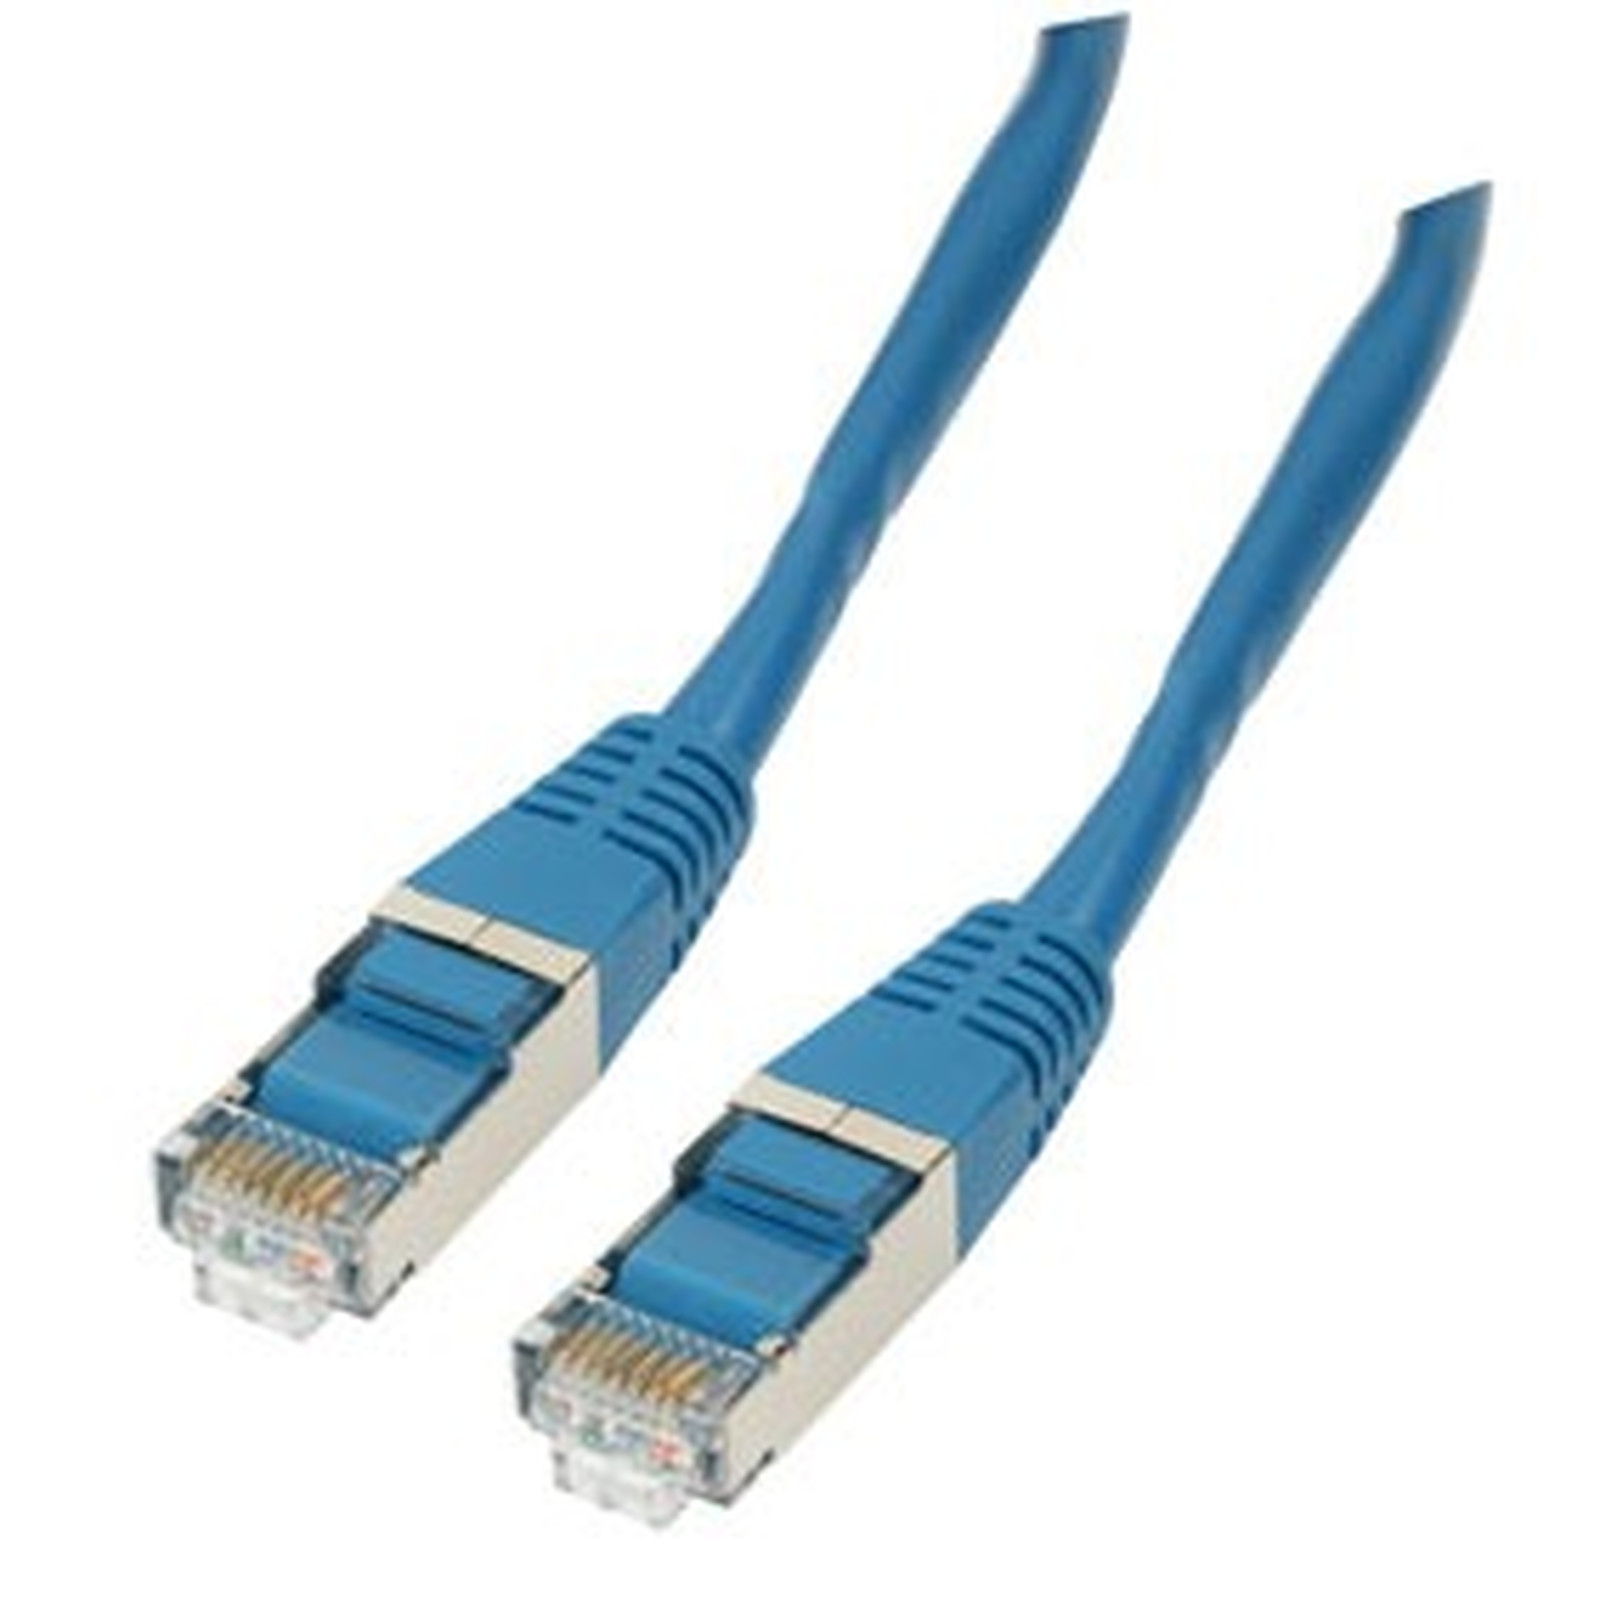 Cable RJ45 categorie 6 F/UTP 0.5 m (Bleu) - Cable RJ45 Generique